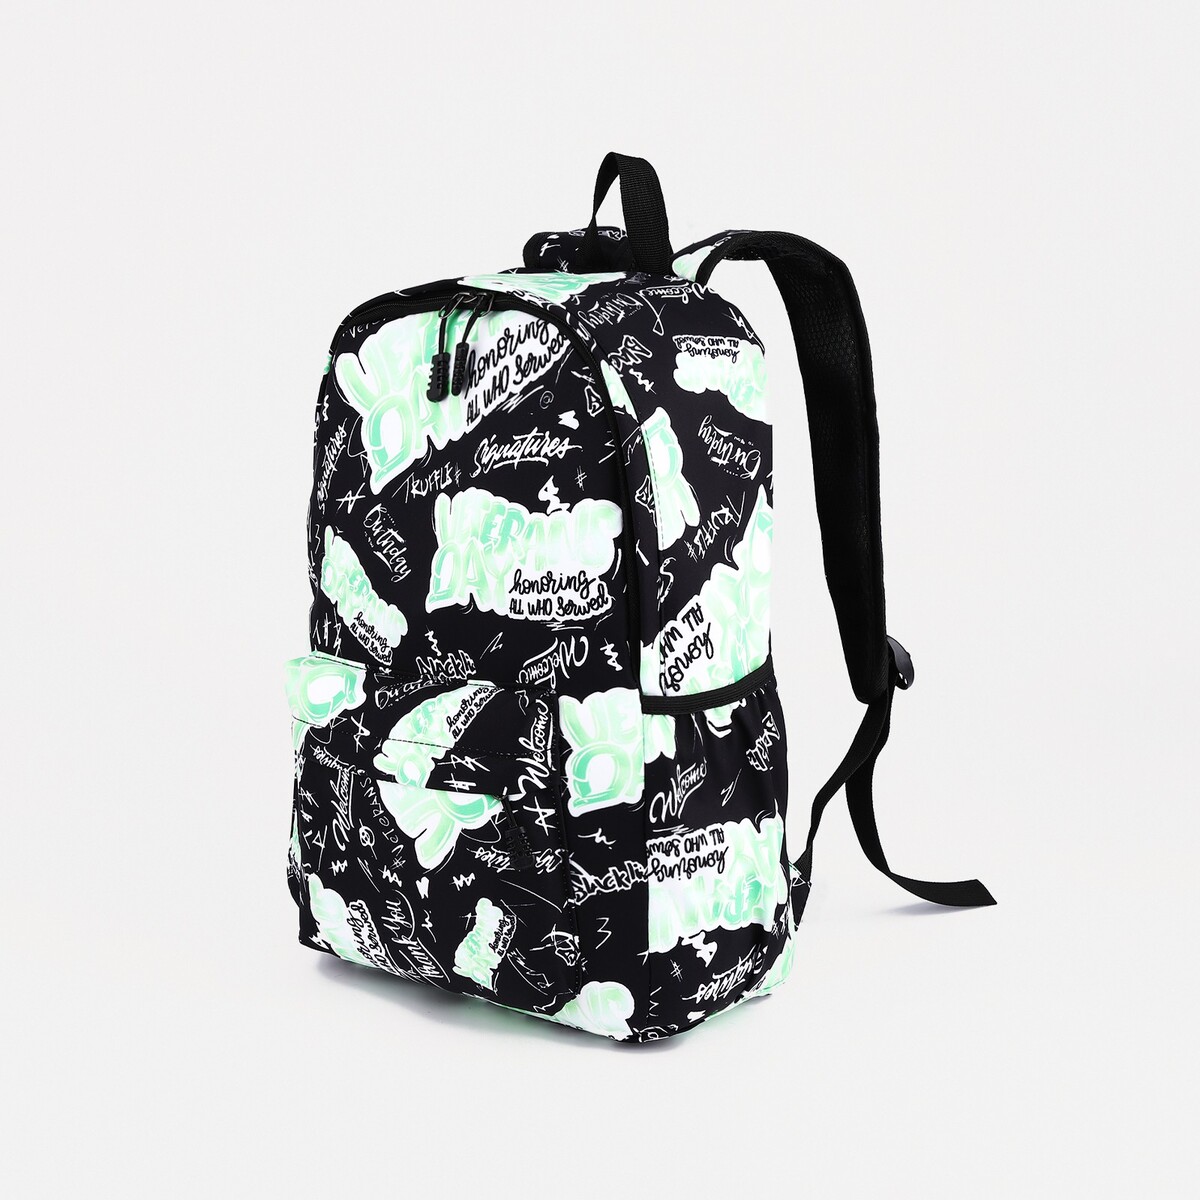 Рюкзак на молнии, 3 наружных кармана, цвет зеленый/черный рюкзак школьный из текстиля на молнии 3 кармана пенал зеленый